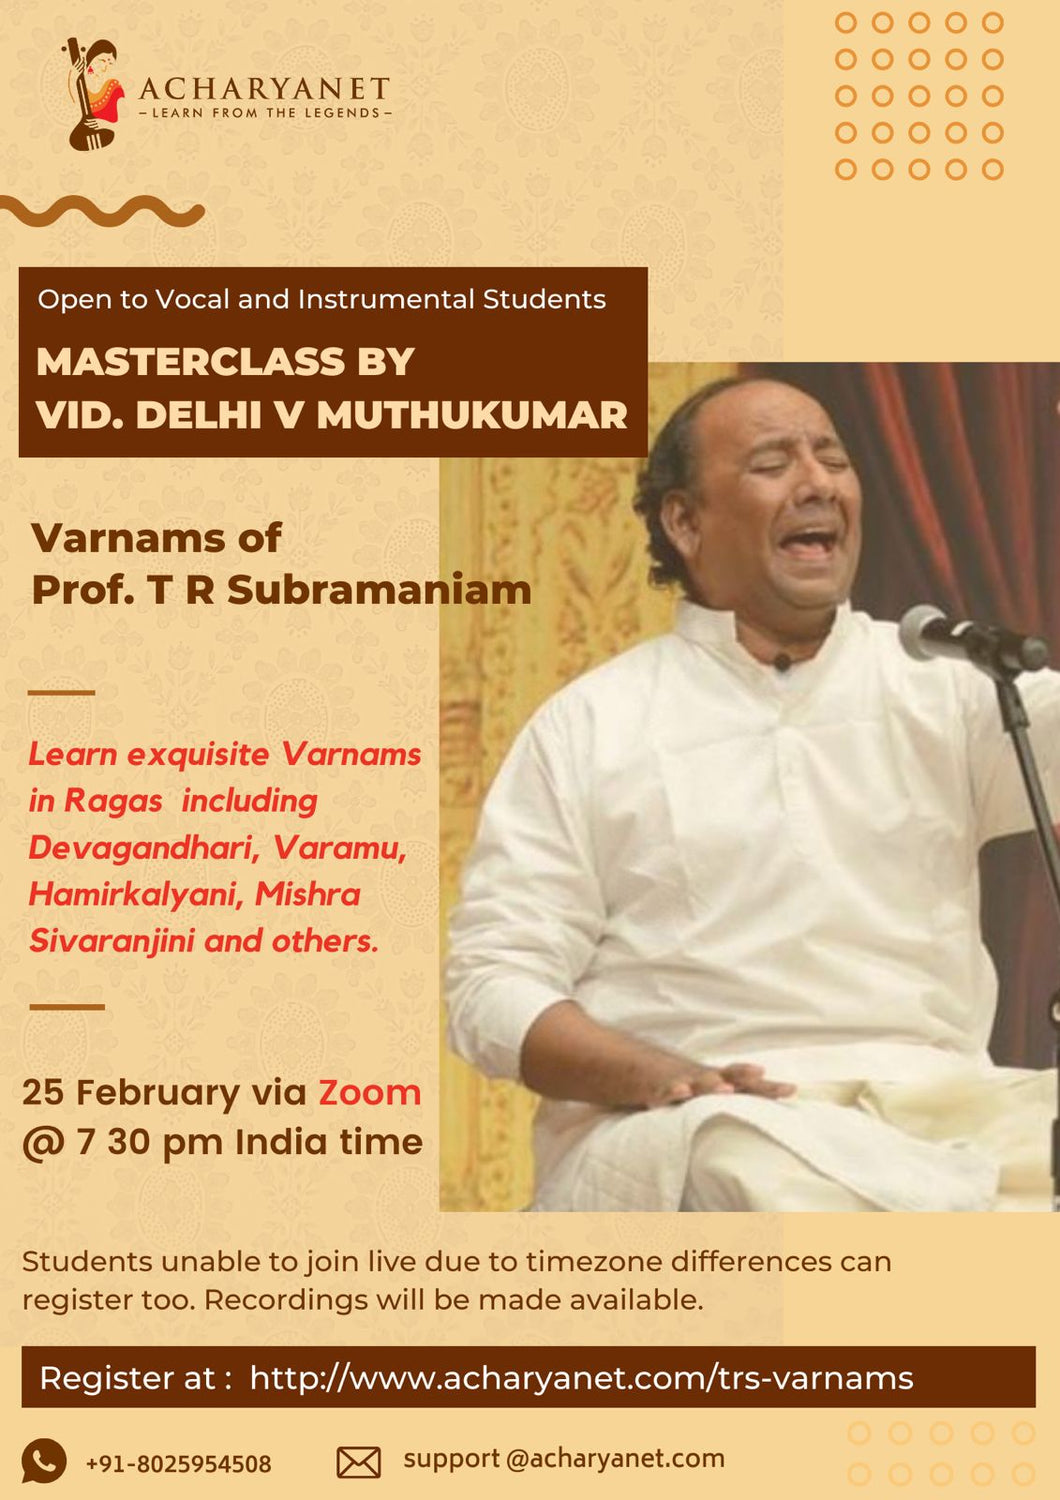 Masterclass on Varnams of Prof. T R Subramaniam by Vid. Delhi Muthukumar